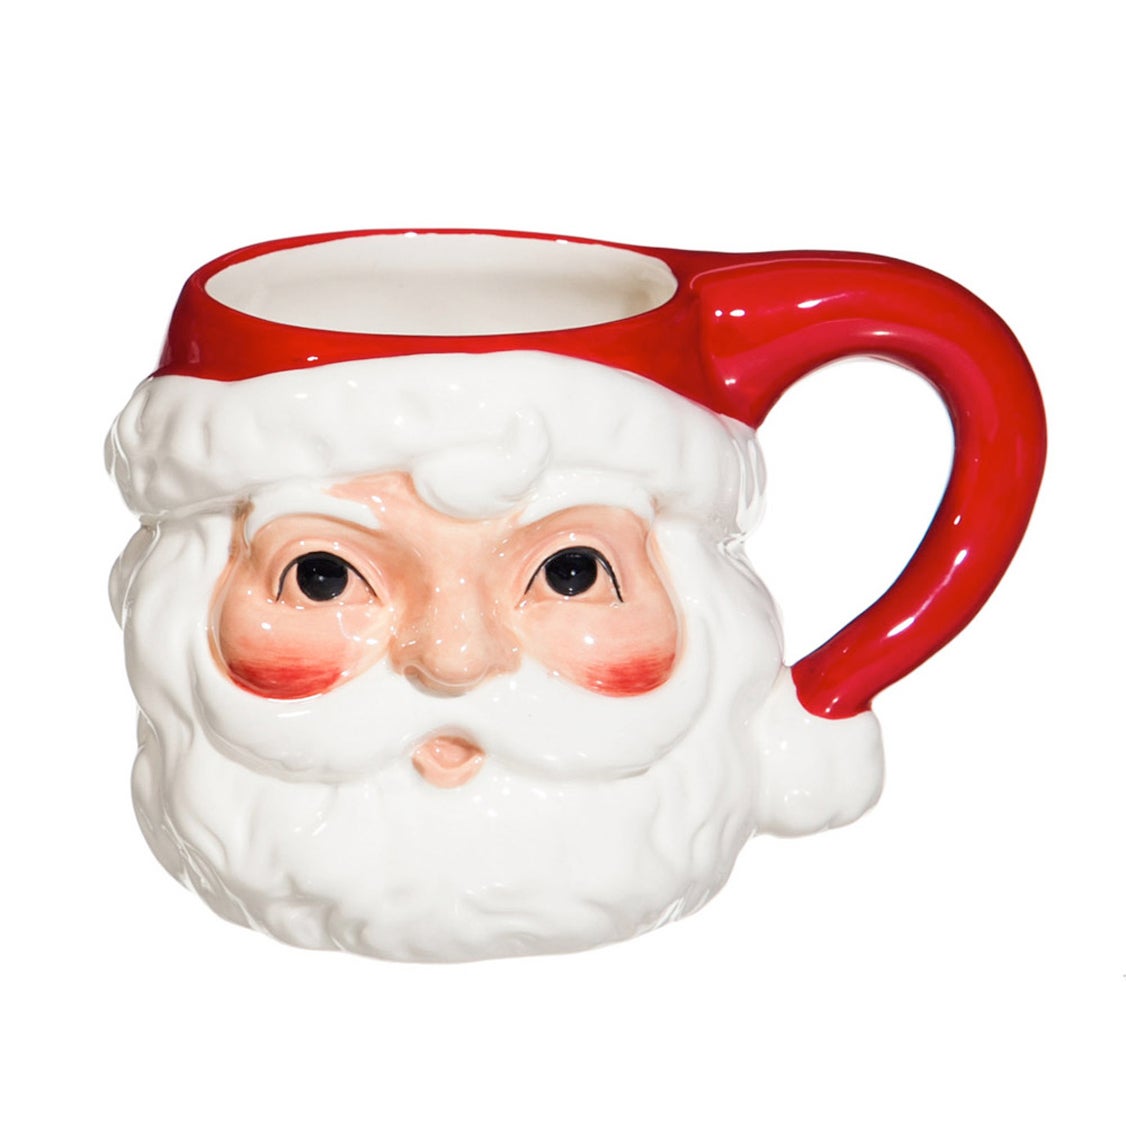 Vintage Santa Claus Ceramic Cup